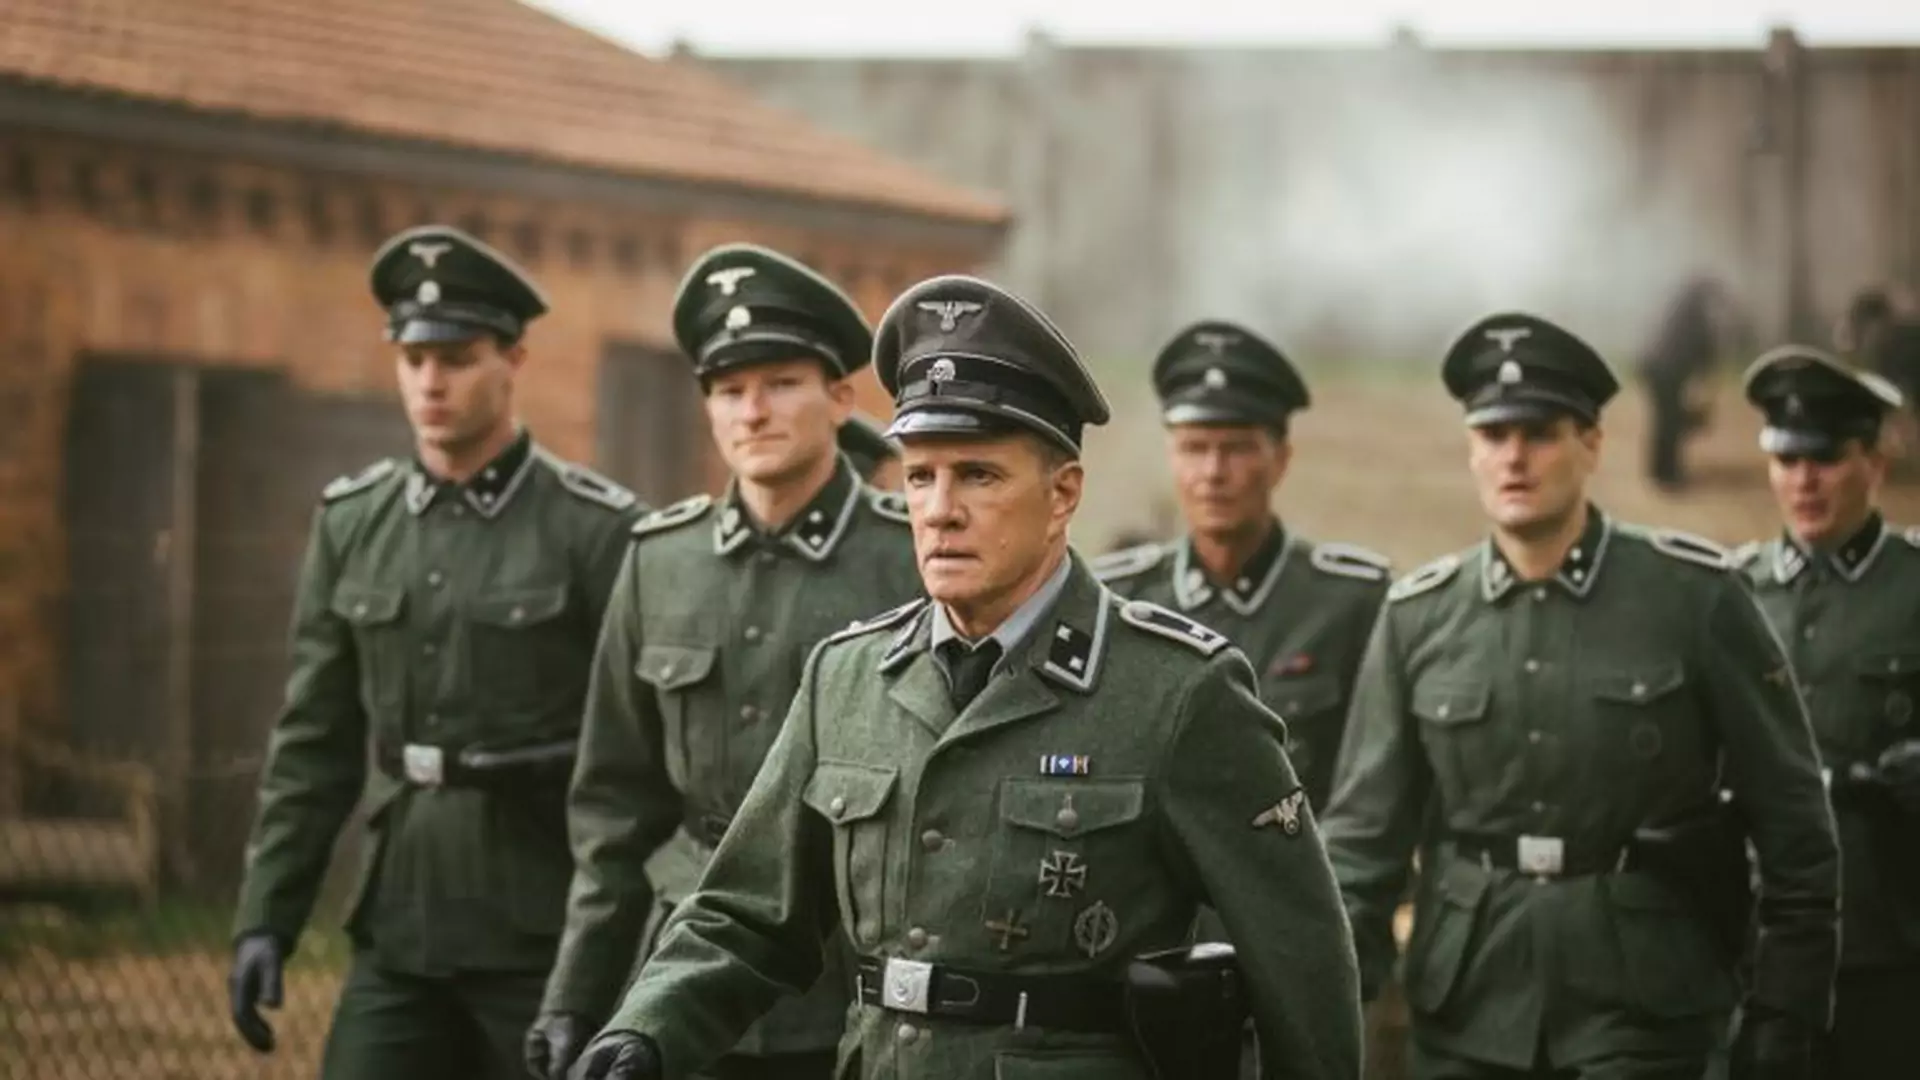 Wielka ucieczka z obozu koncentracyjnego. "Sobibór" to film, który trzeba zobaczyć